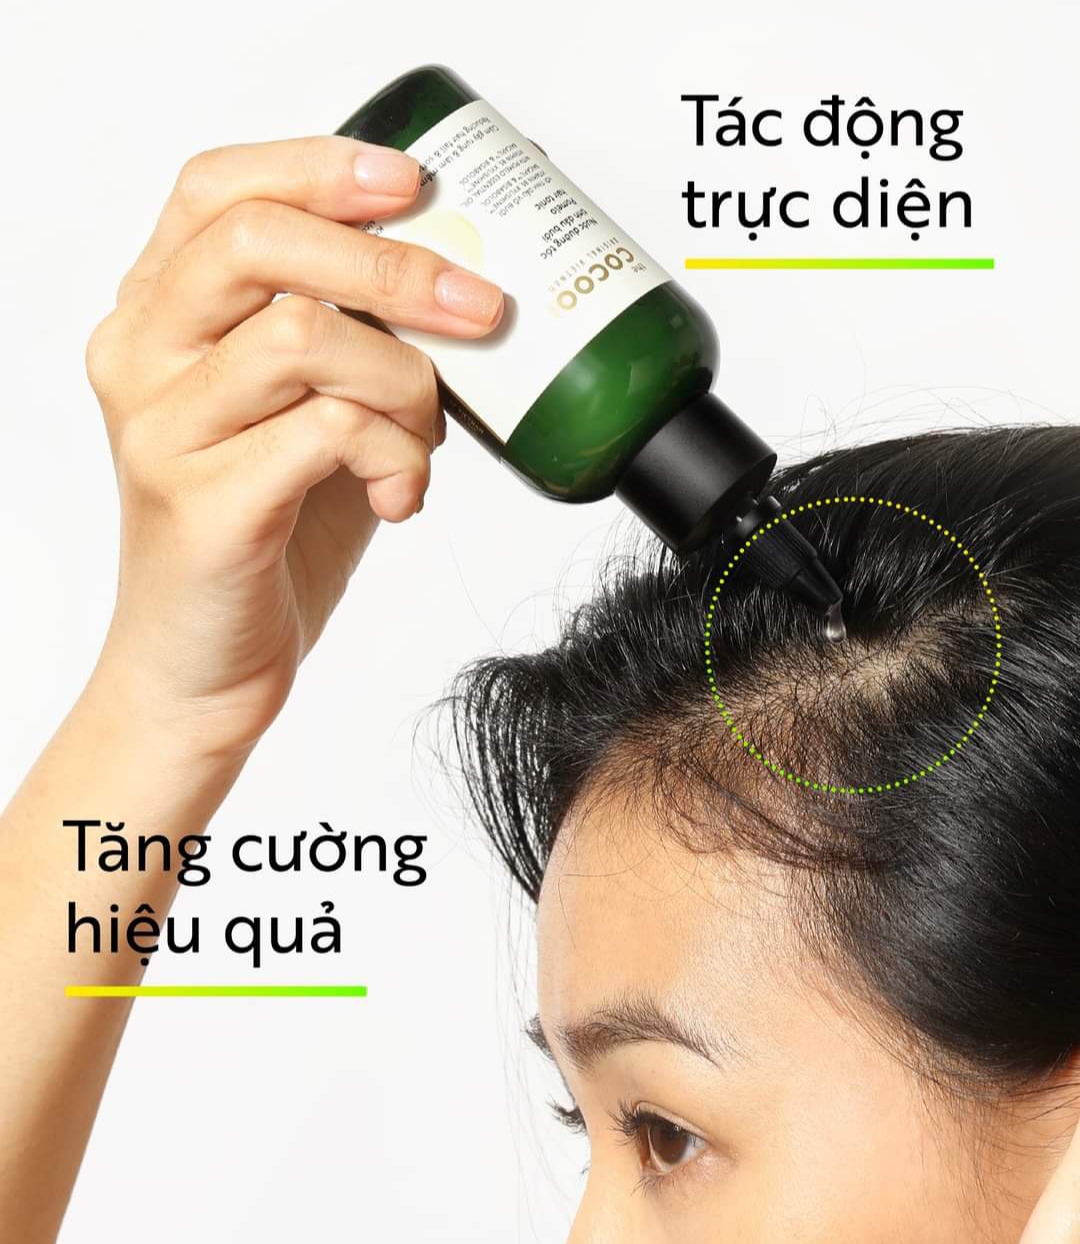 Combo nước dưỡng tóc tinh dầu bưởi Cocoon 140ml - Thanh Mộc Hương Hà Tĩnh